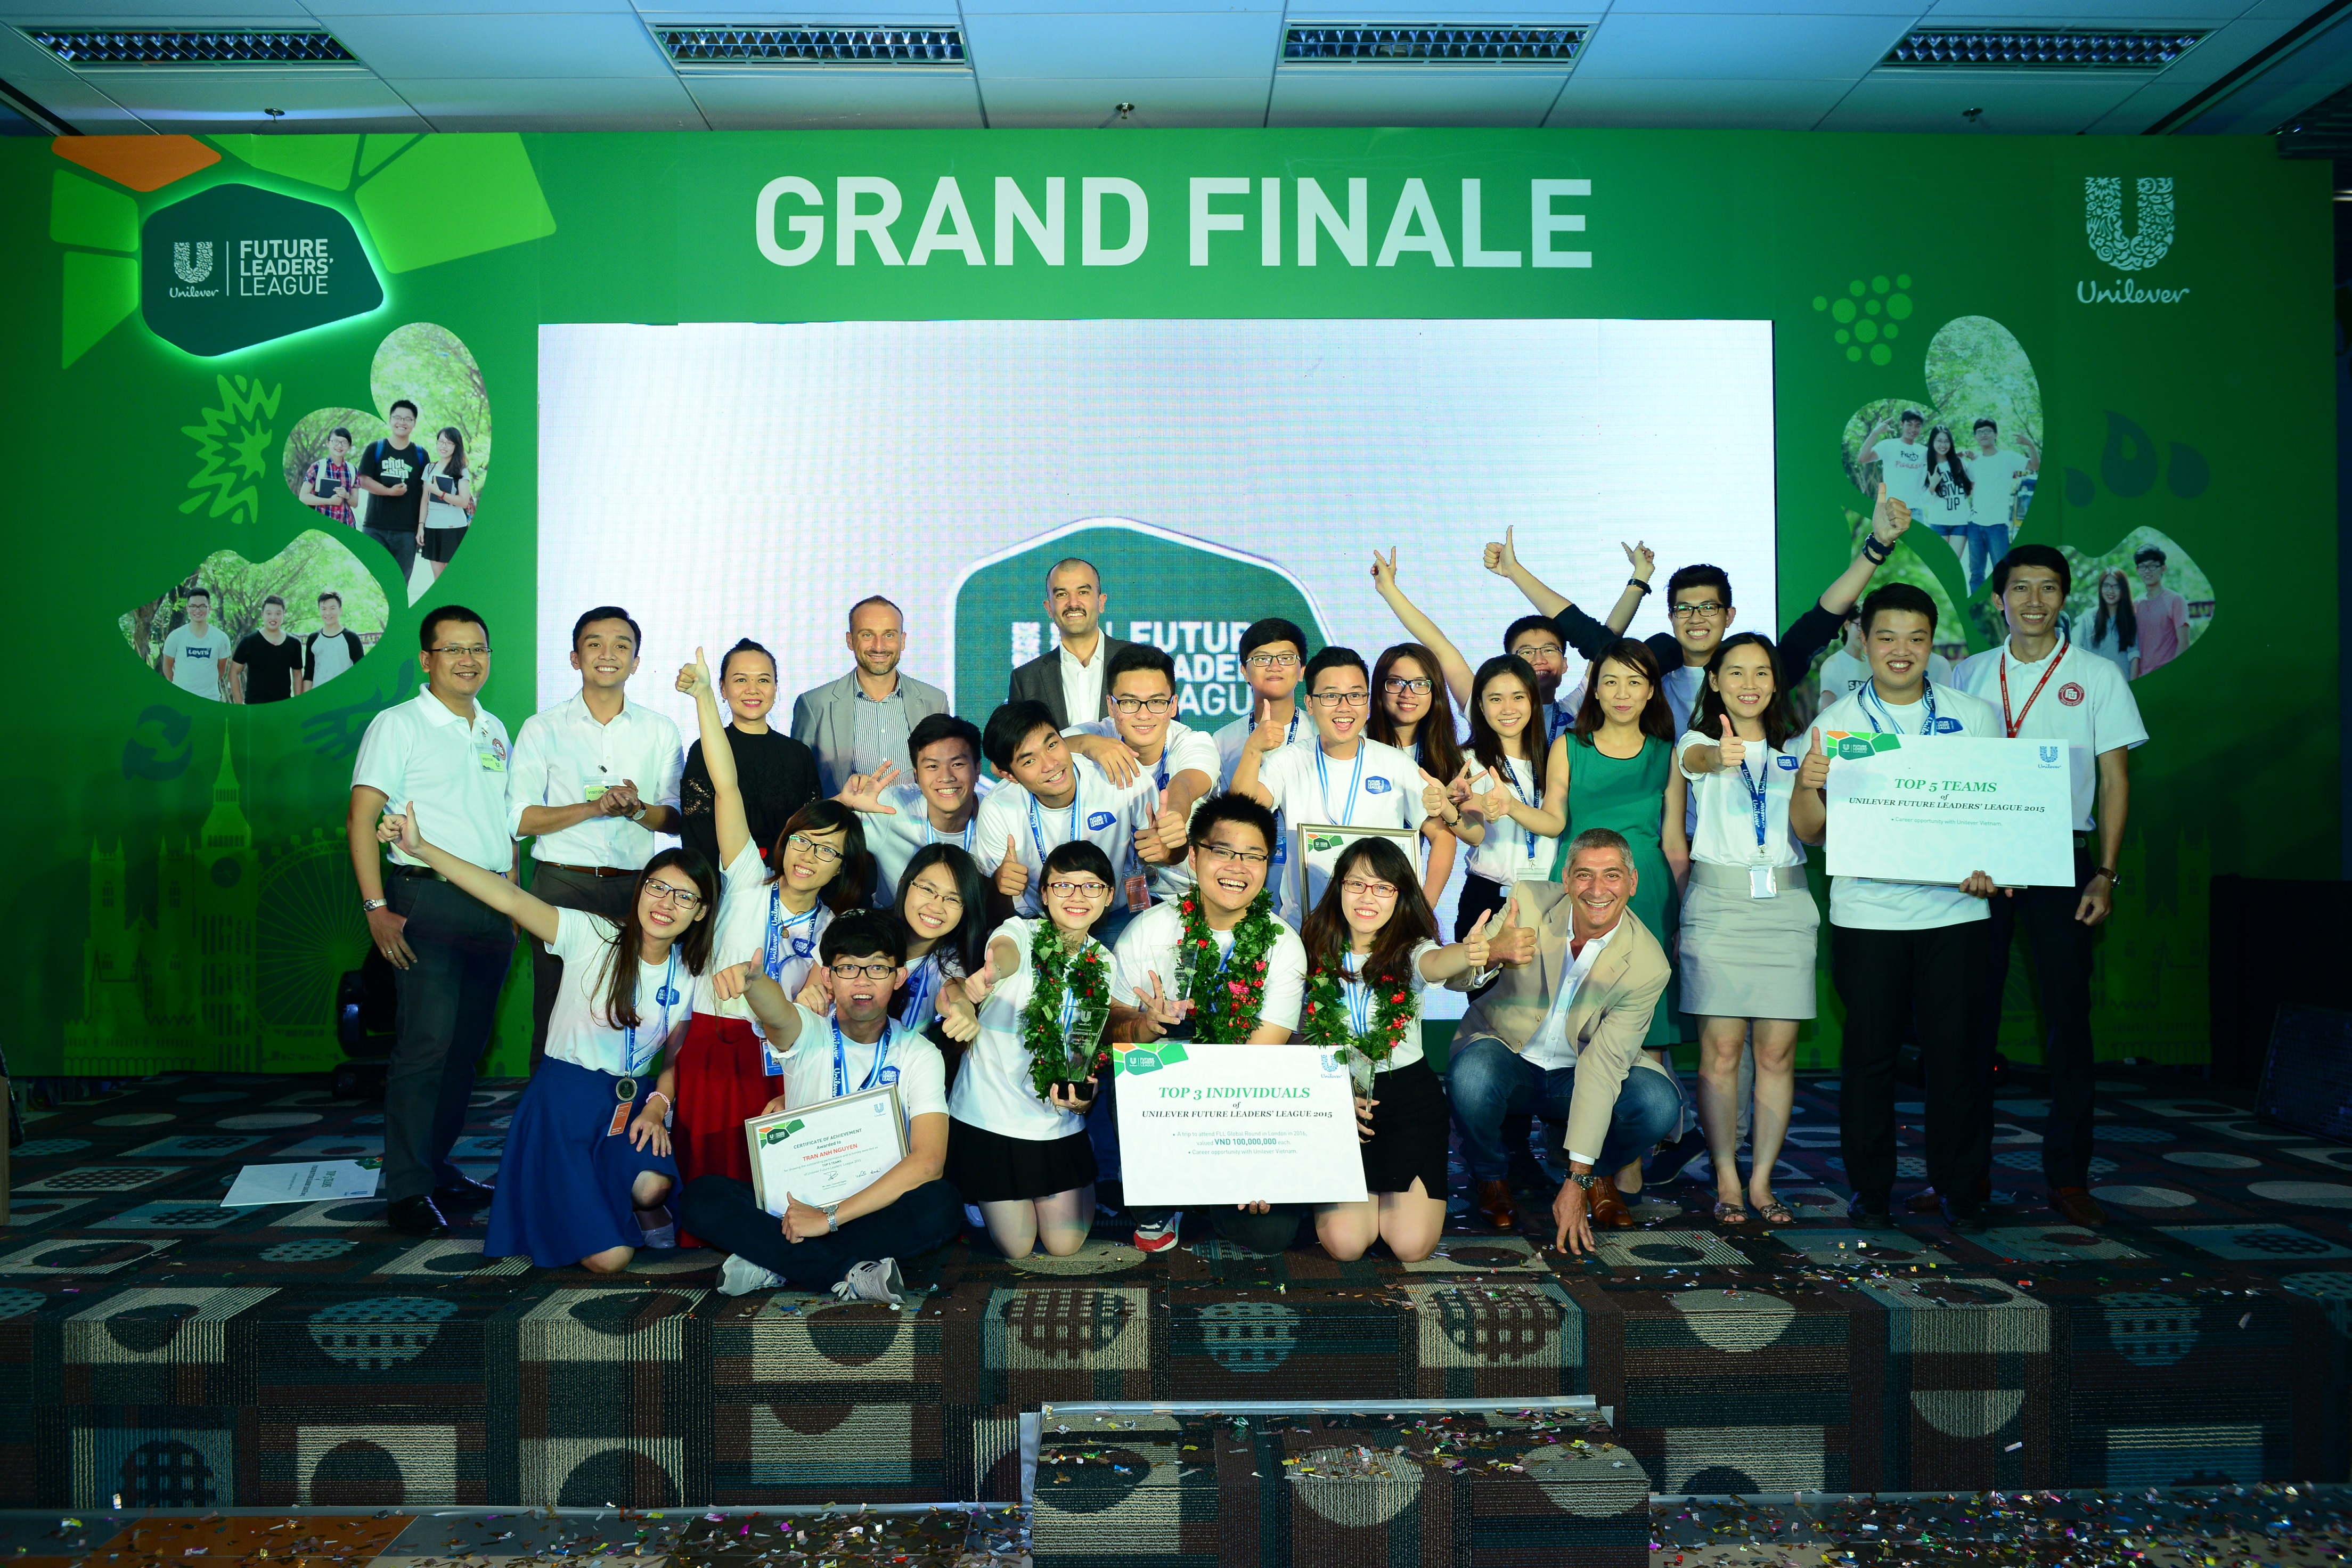  Các đội thi chung kết UDAY và thành viên ban giám khảo cuộc thi Thách thức kinh doanh Unilever Việt Nam năm 2015 - Ảnh: Unilever Việt Nam cung cấp. 